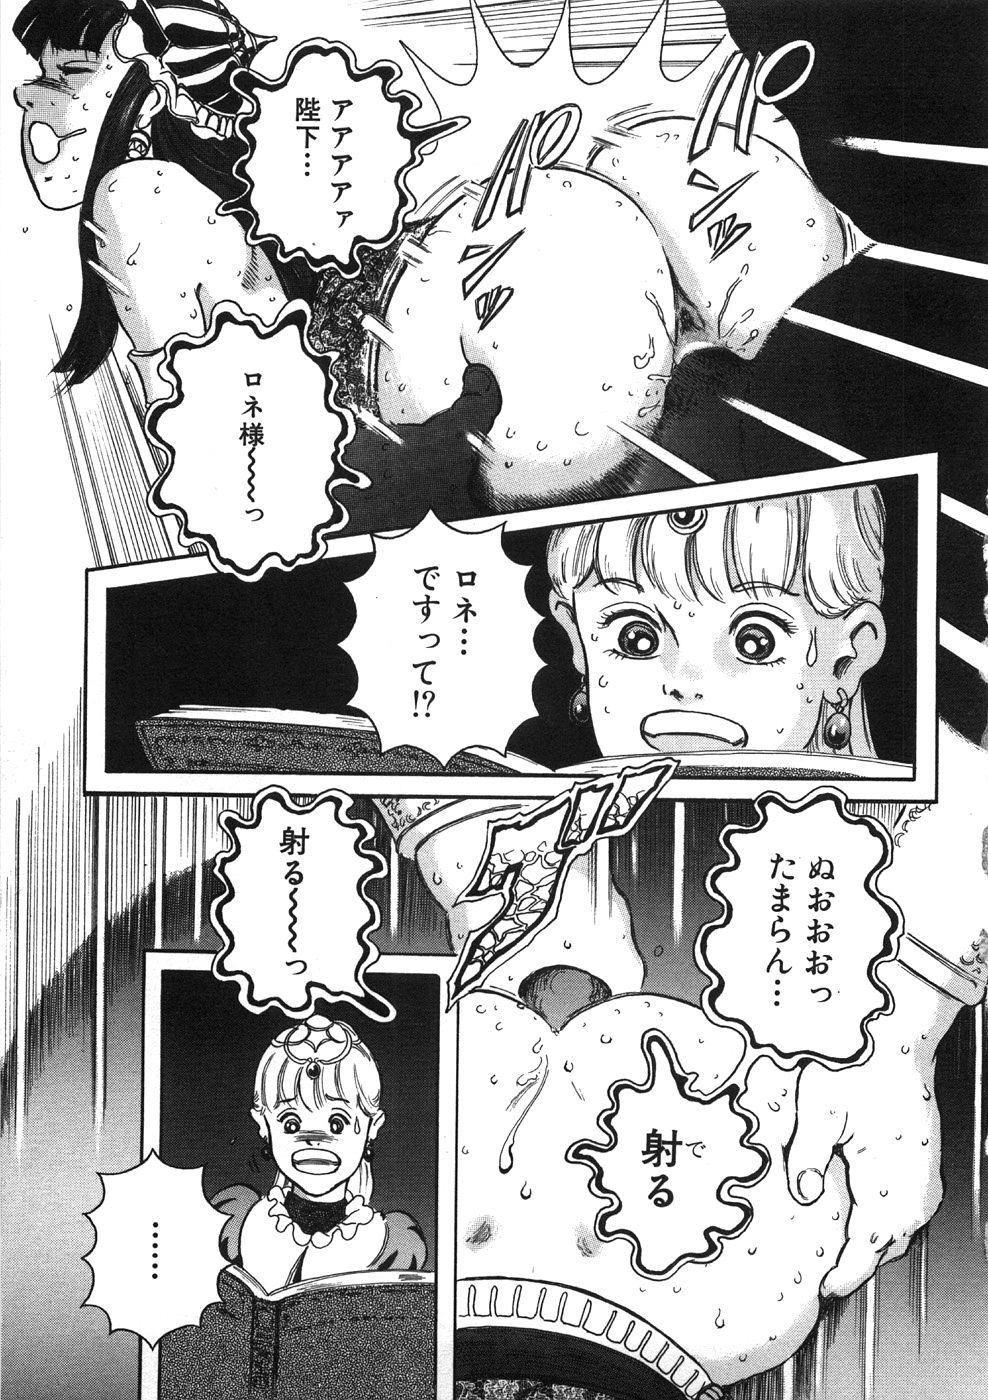 [Yasuhiko Ohtsuki] [ootsuki ho hiko] Rone no Nikki page 13 full